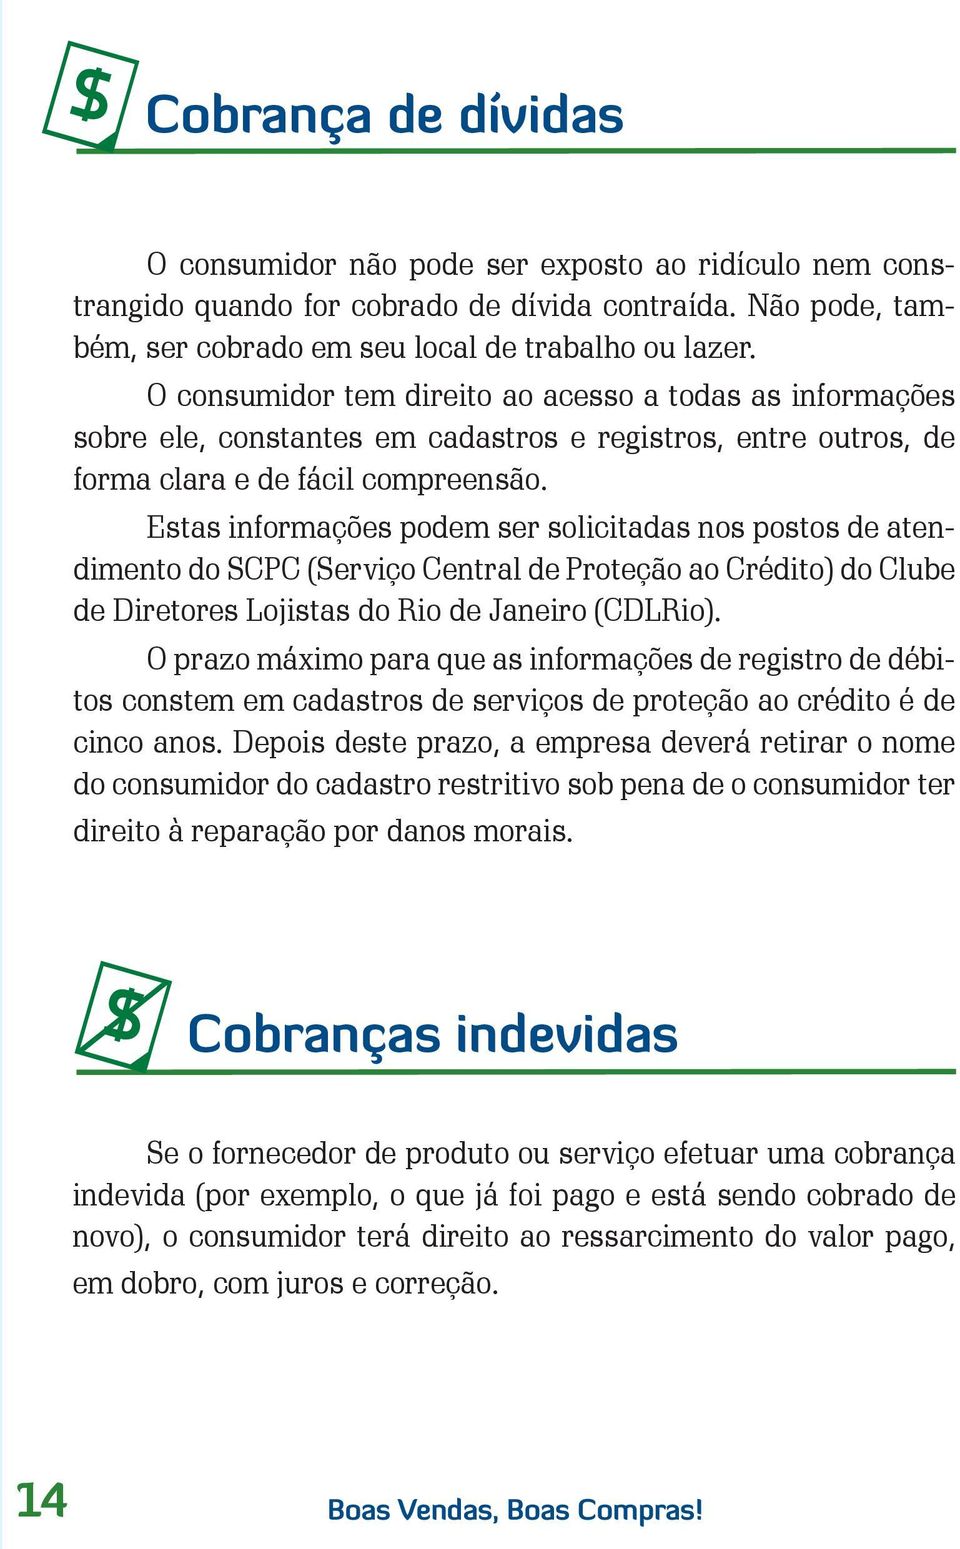 Estas informações podem ser solicitadas nos postos de atendimento do SCPC (Serviço Central de Proteção ao Crédito) do Clube de Diretores Lojistas do Rio de Janeiro (CDLRio).